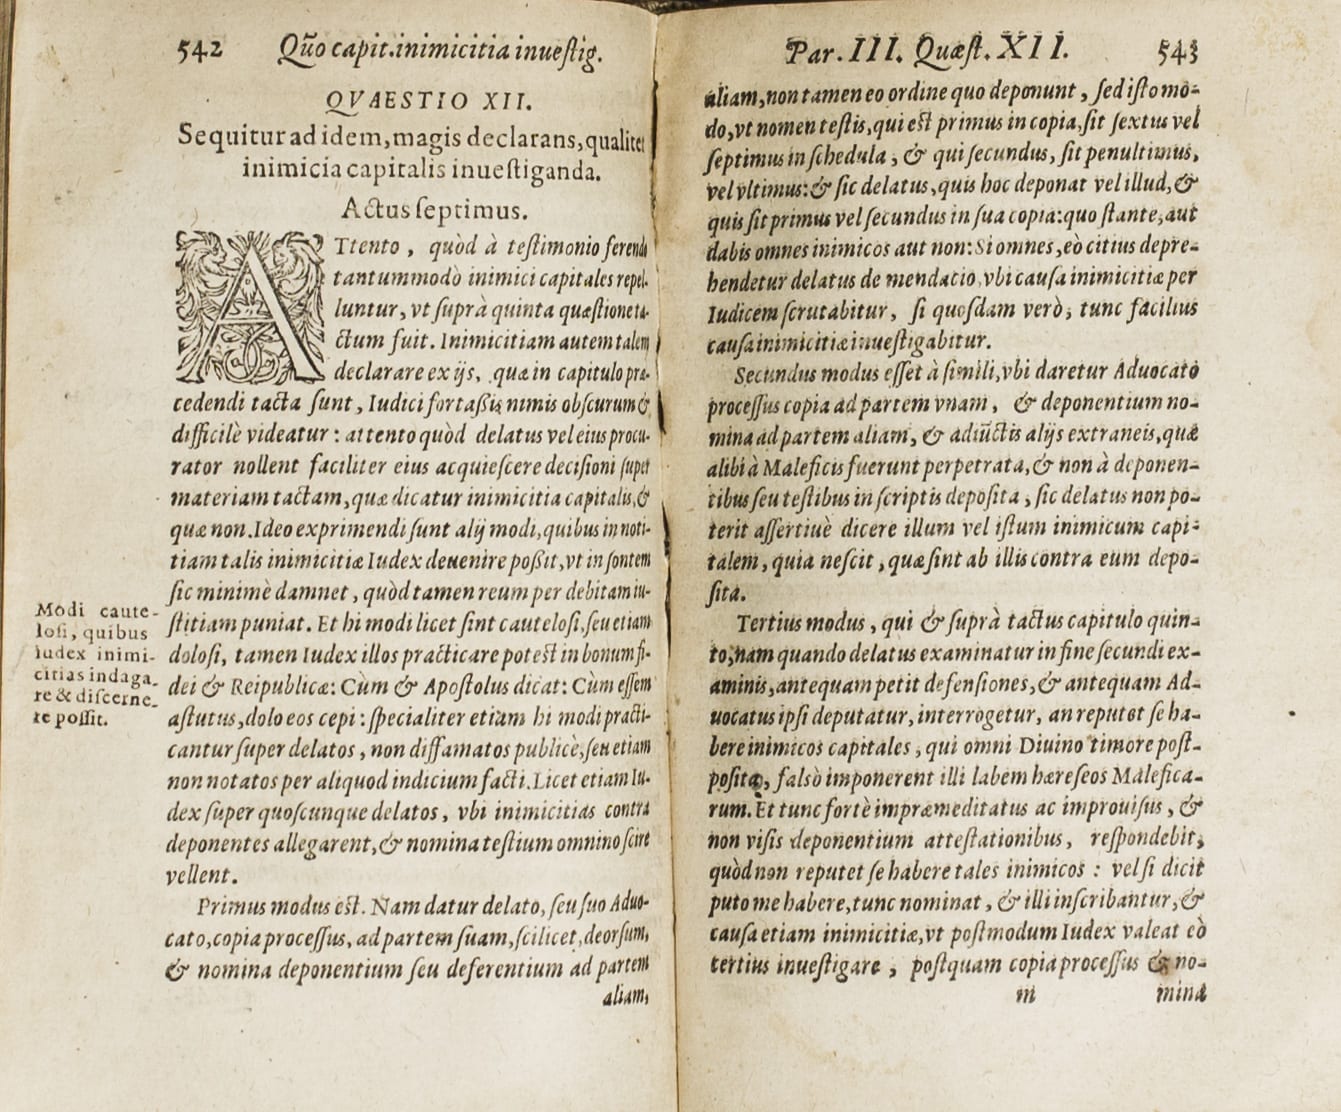 View full sized image: Malleus maleficarum. Francofurti: Sumptibus Nicolai Bassaei, 1588